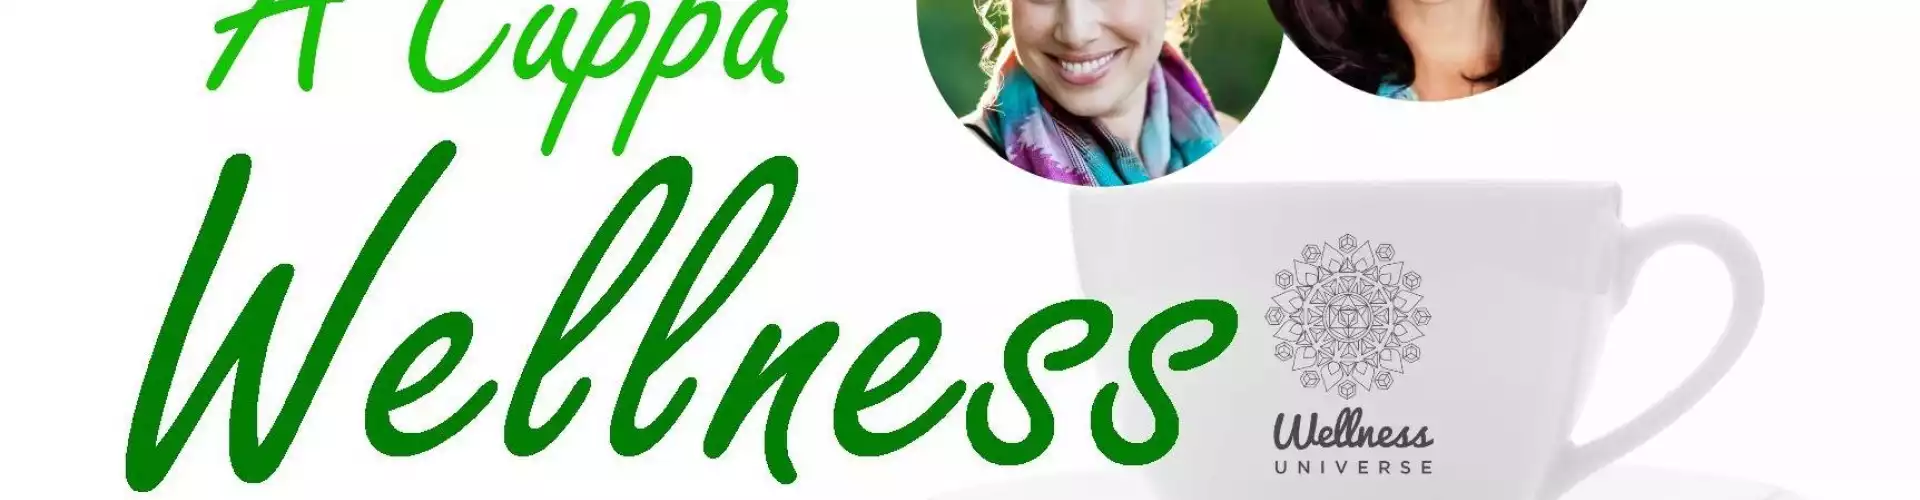 A Cuppa Wellness con Julie Reisler - The Easy Life Makeover - 3 secretos para diseñar tu mejor yo